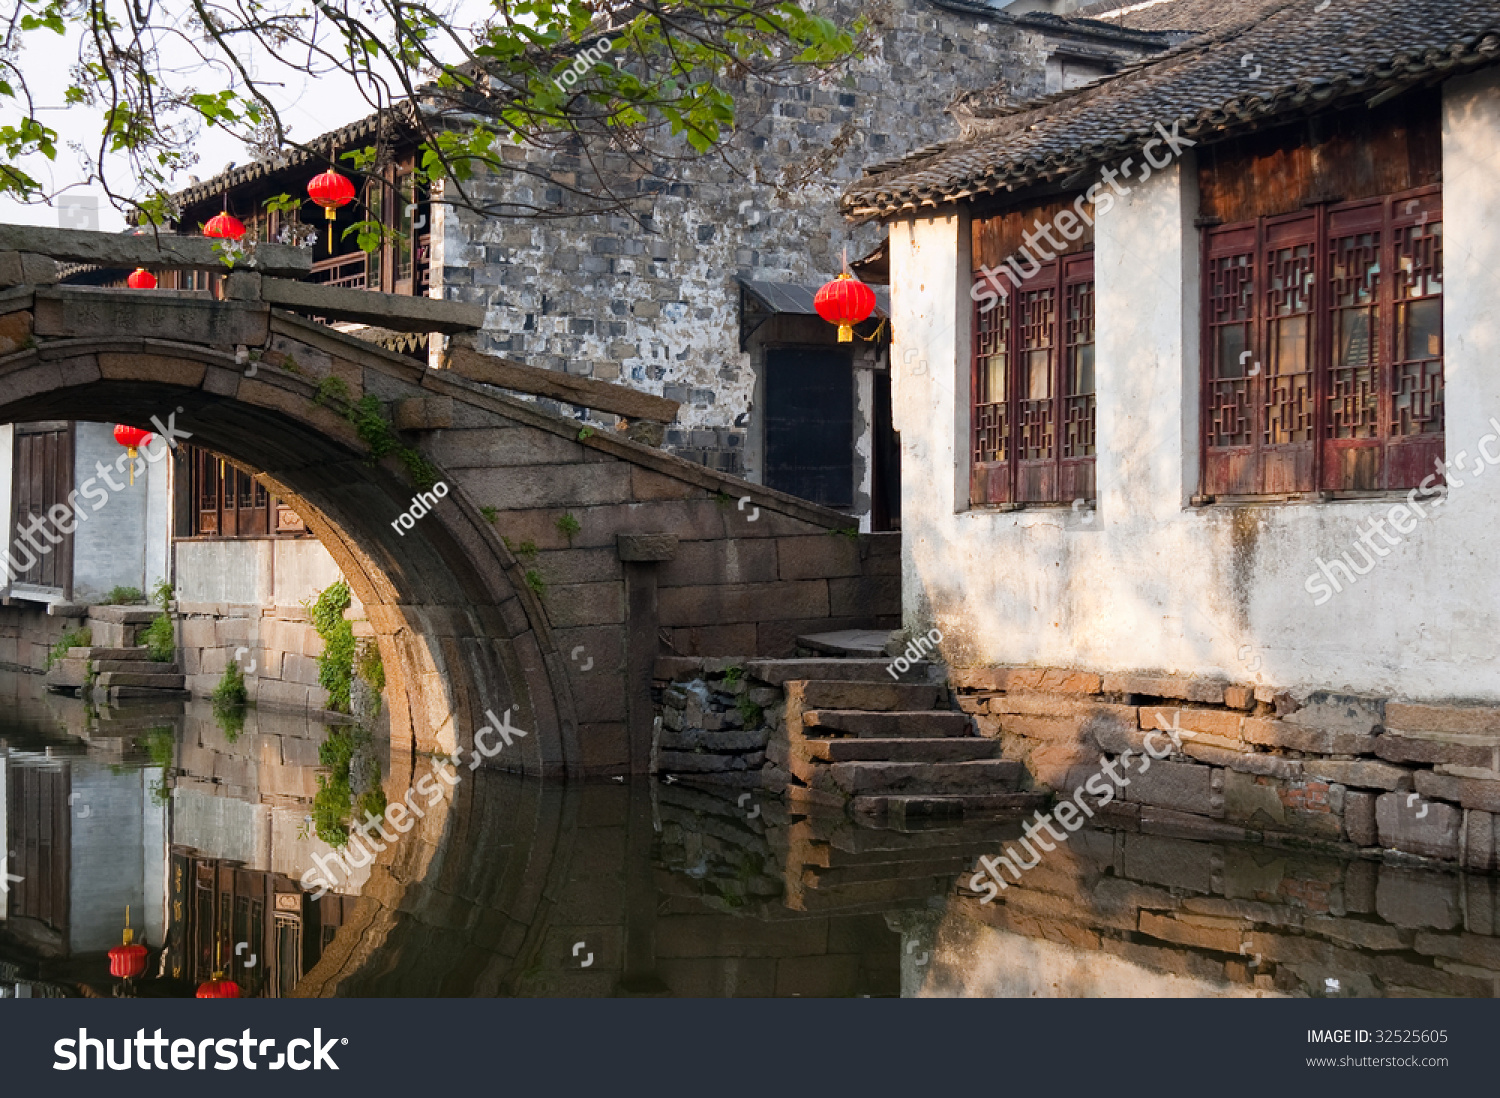 Famous Water Village Zhouzhuang In Jiangsu ,China. The Houses By The ...